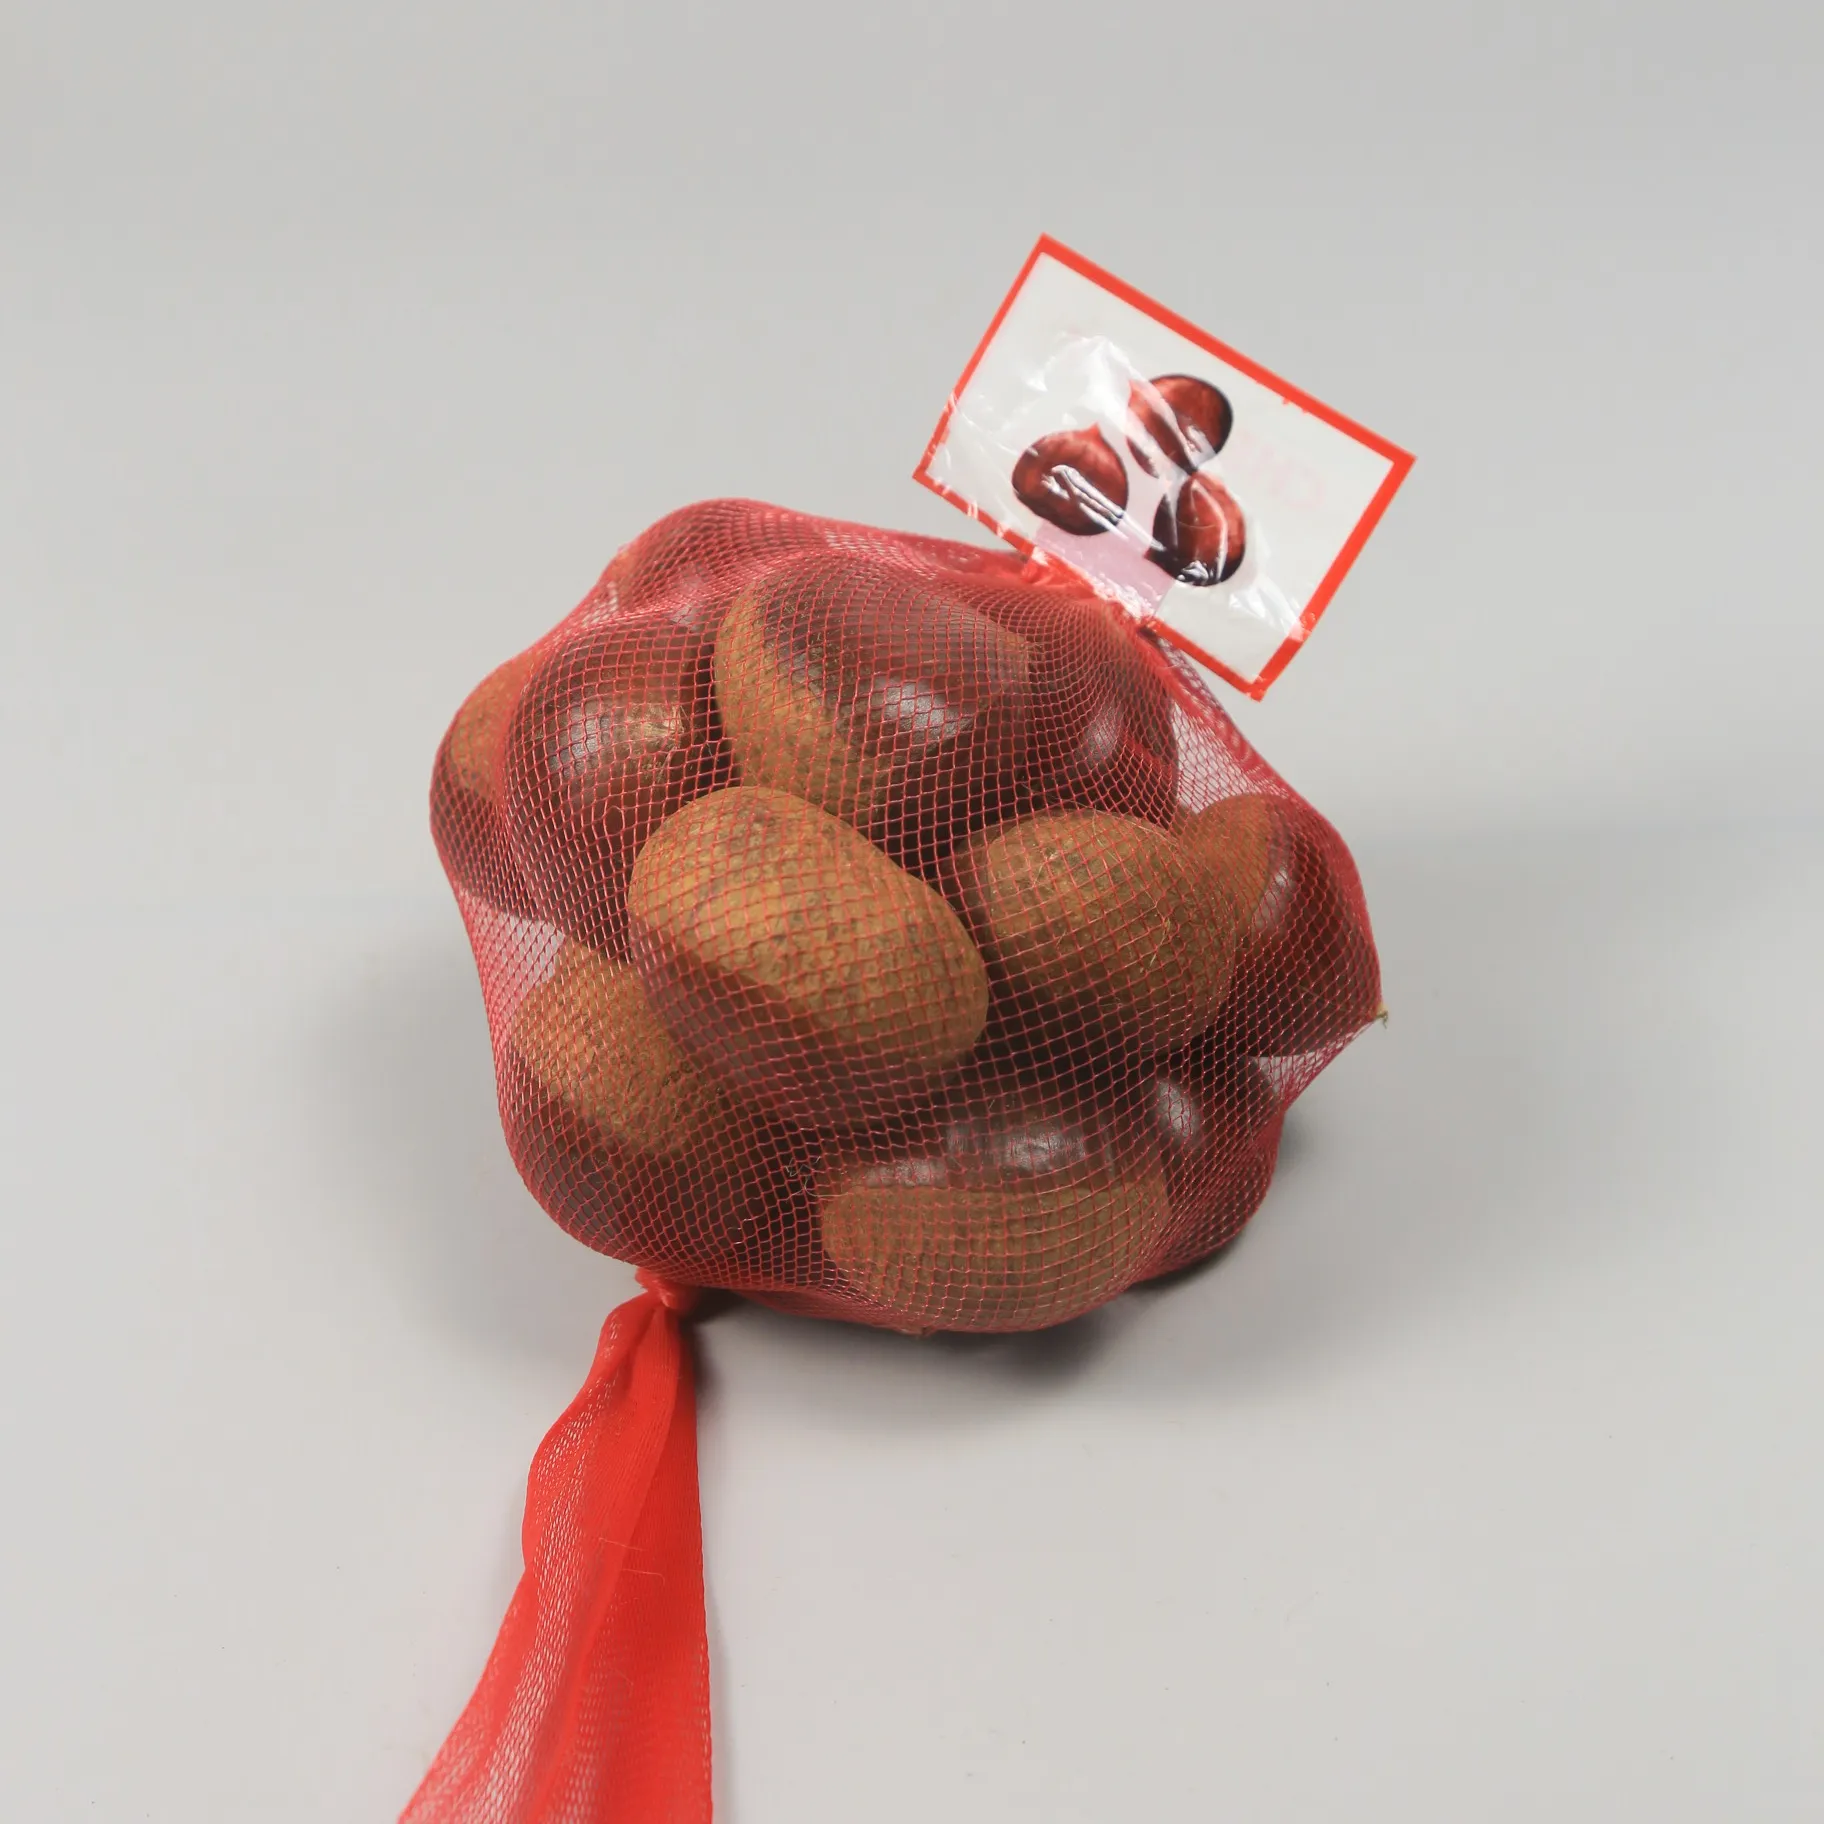 Fábrica de exportación de castañas dulces y frescas de China, suministro directo de castañas dulces al precio más bajo